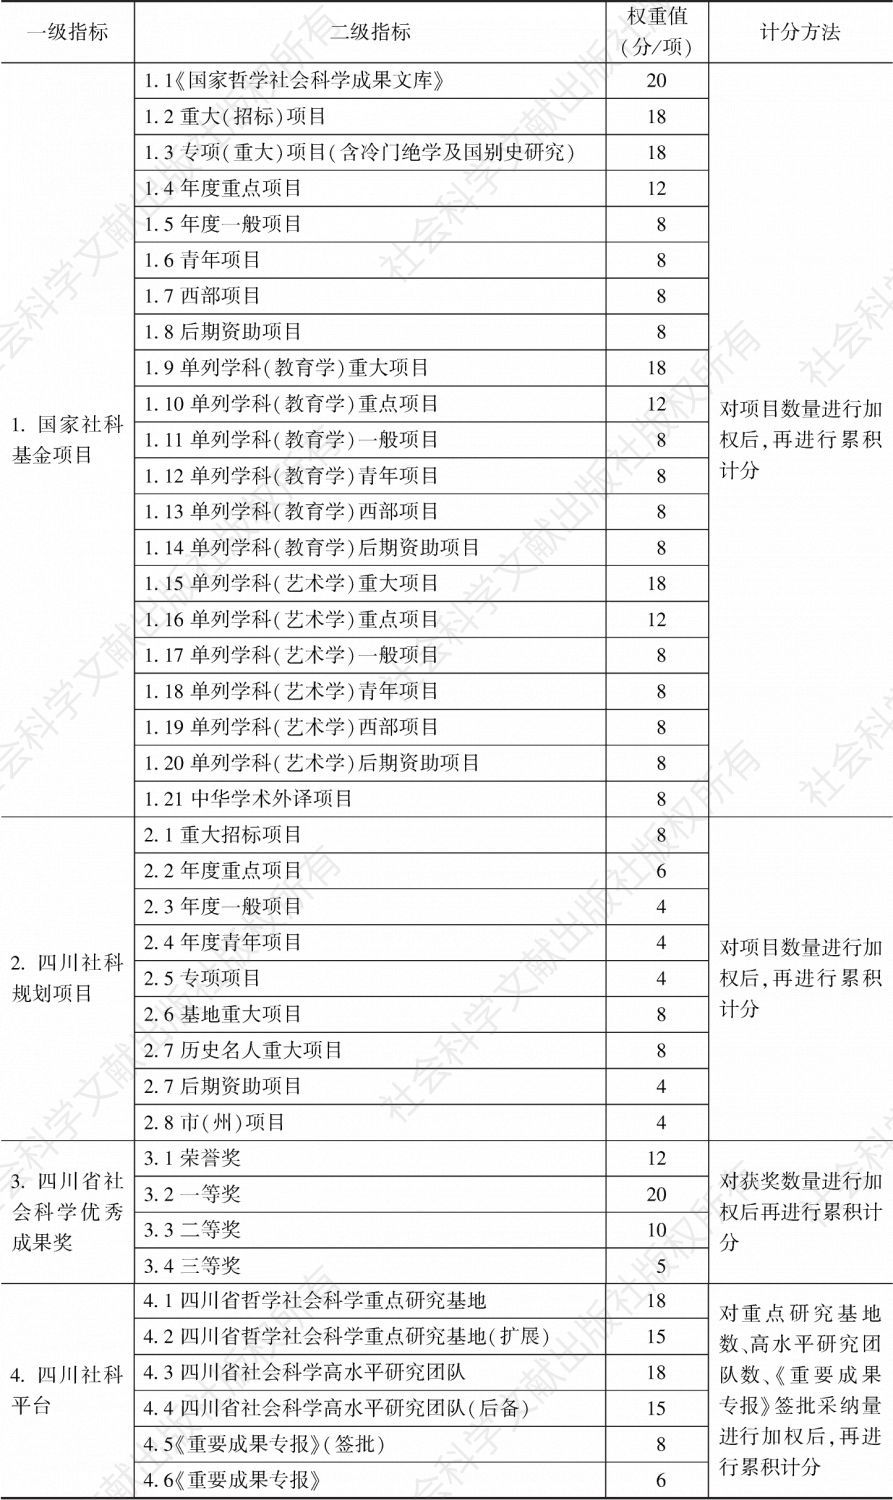 表1 四川省哲学社会科学评估指标体系